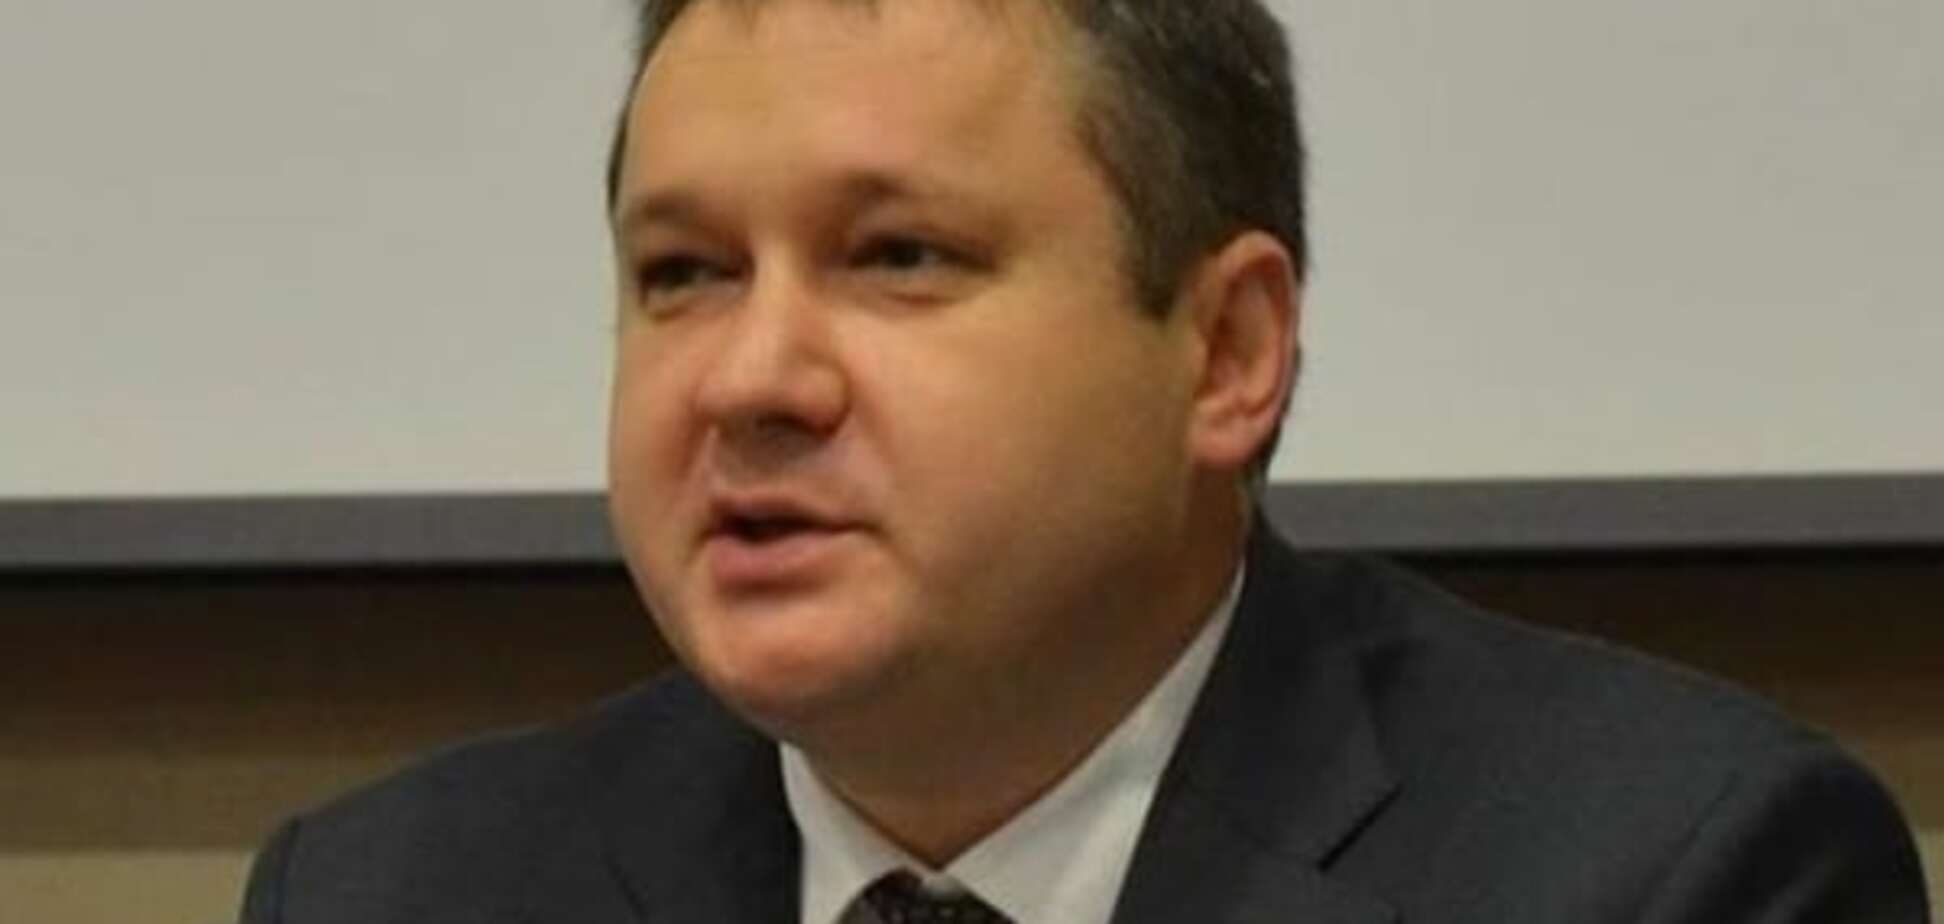 Алексей Кошель